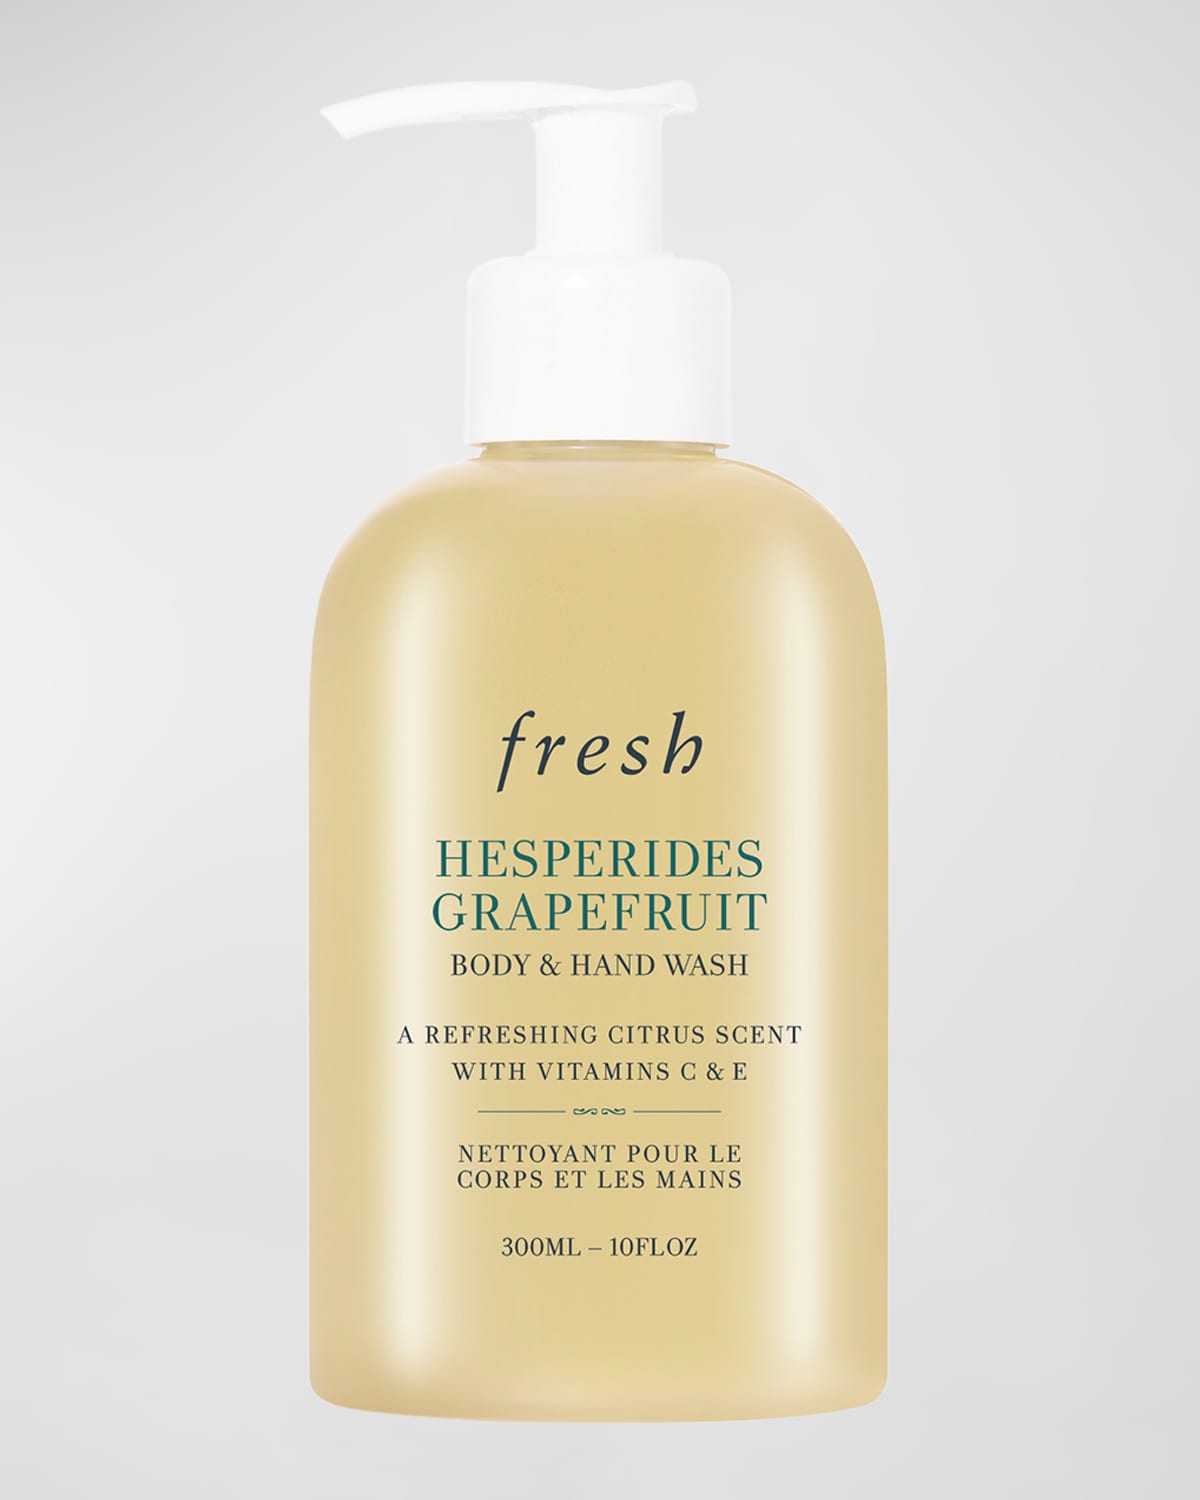 Hesperides Grapefruit Body & Hand Wash, 10 oz.